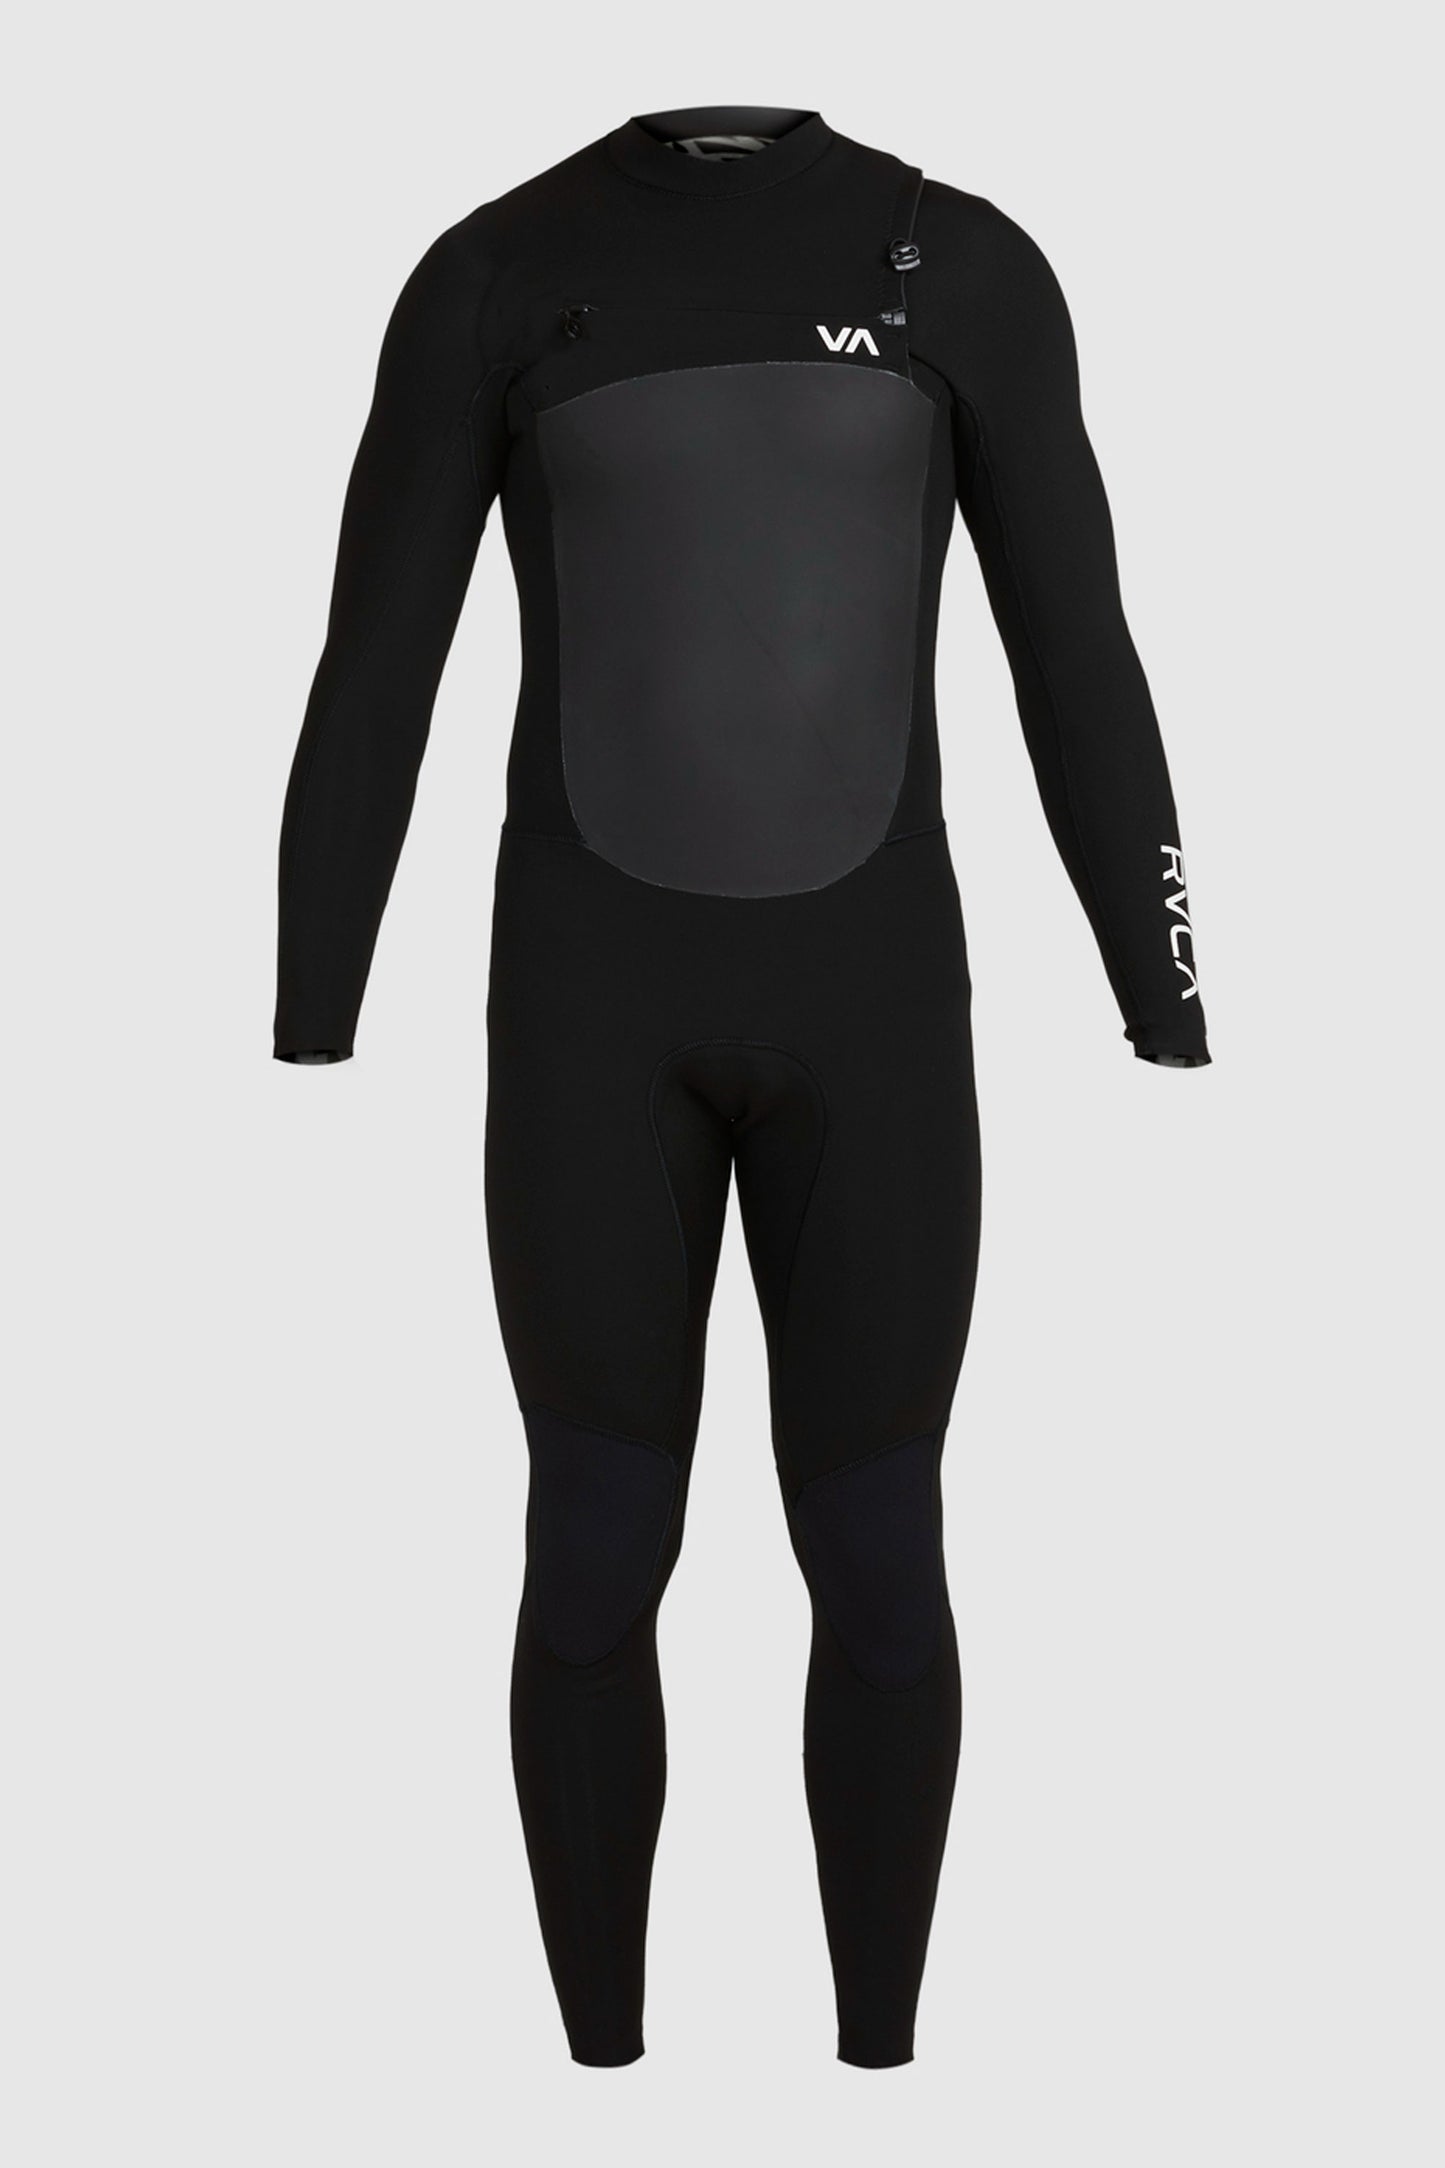 Pukas-Surf-Shop-RVCA-wetsuit-3-2-balance-black